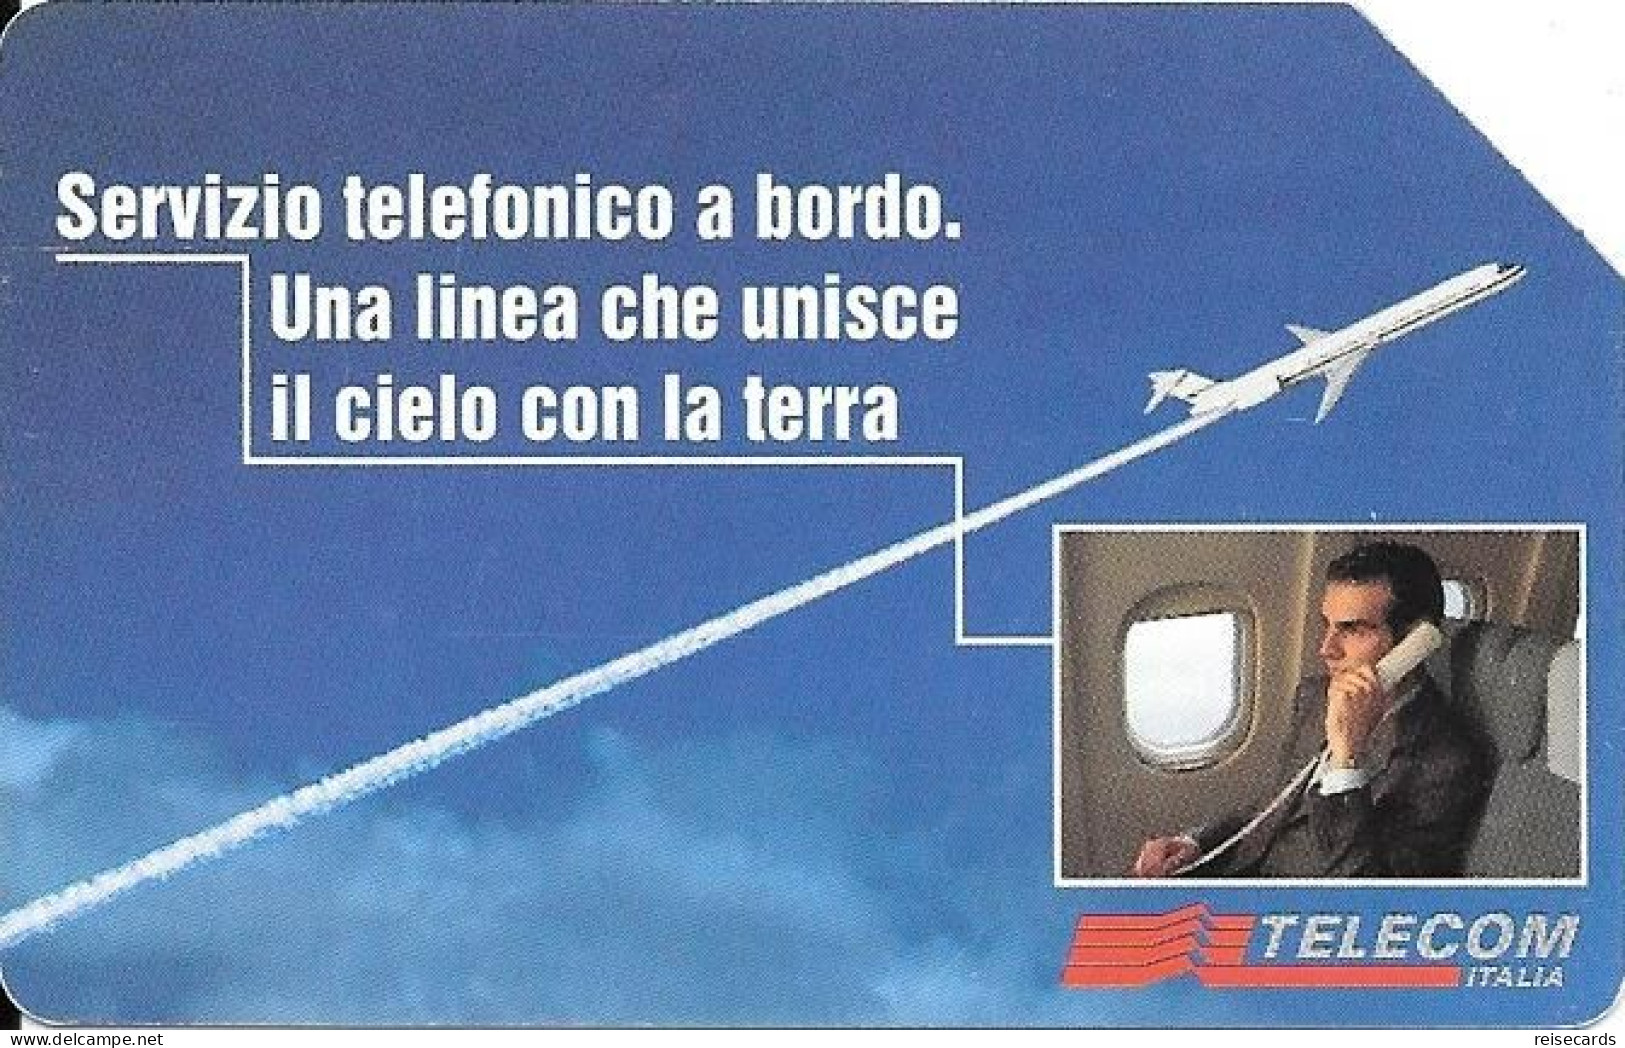 Italy: Telecom Italia - Servizio Telefonico A Bordo - Públicas  Publicitarias